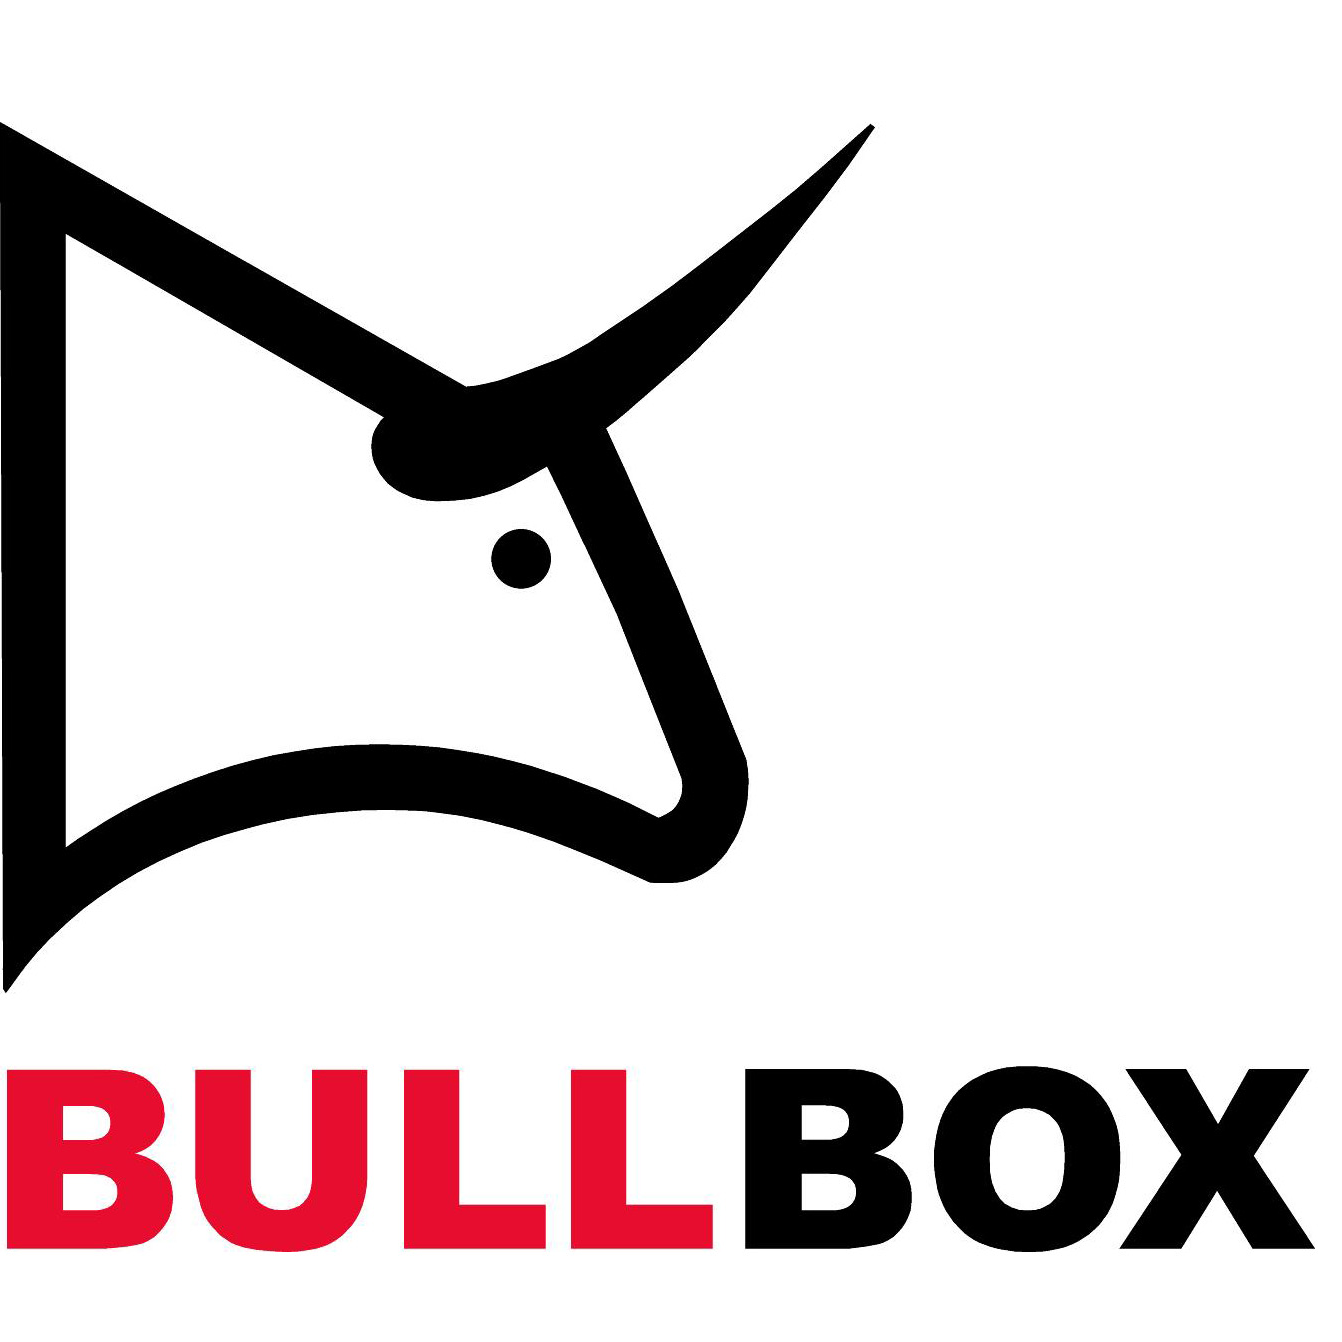 Contenedores y embalajes normalizados (BULLBOX)